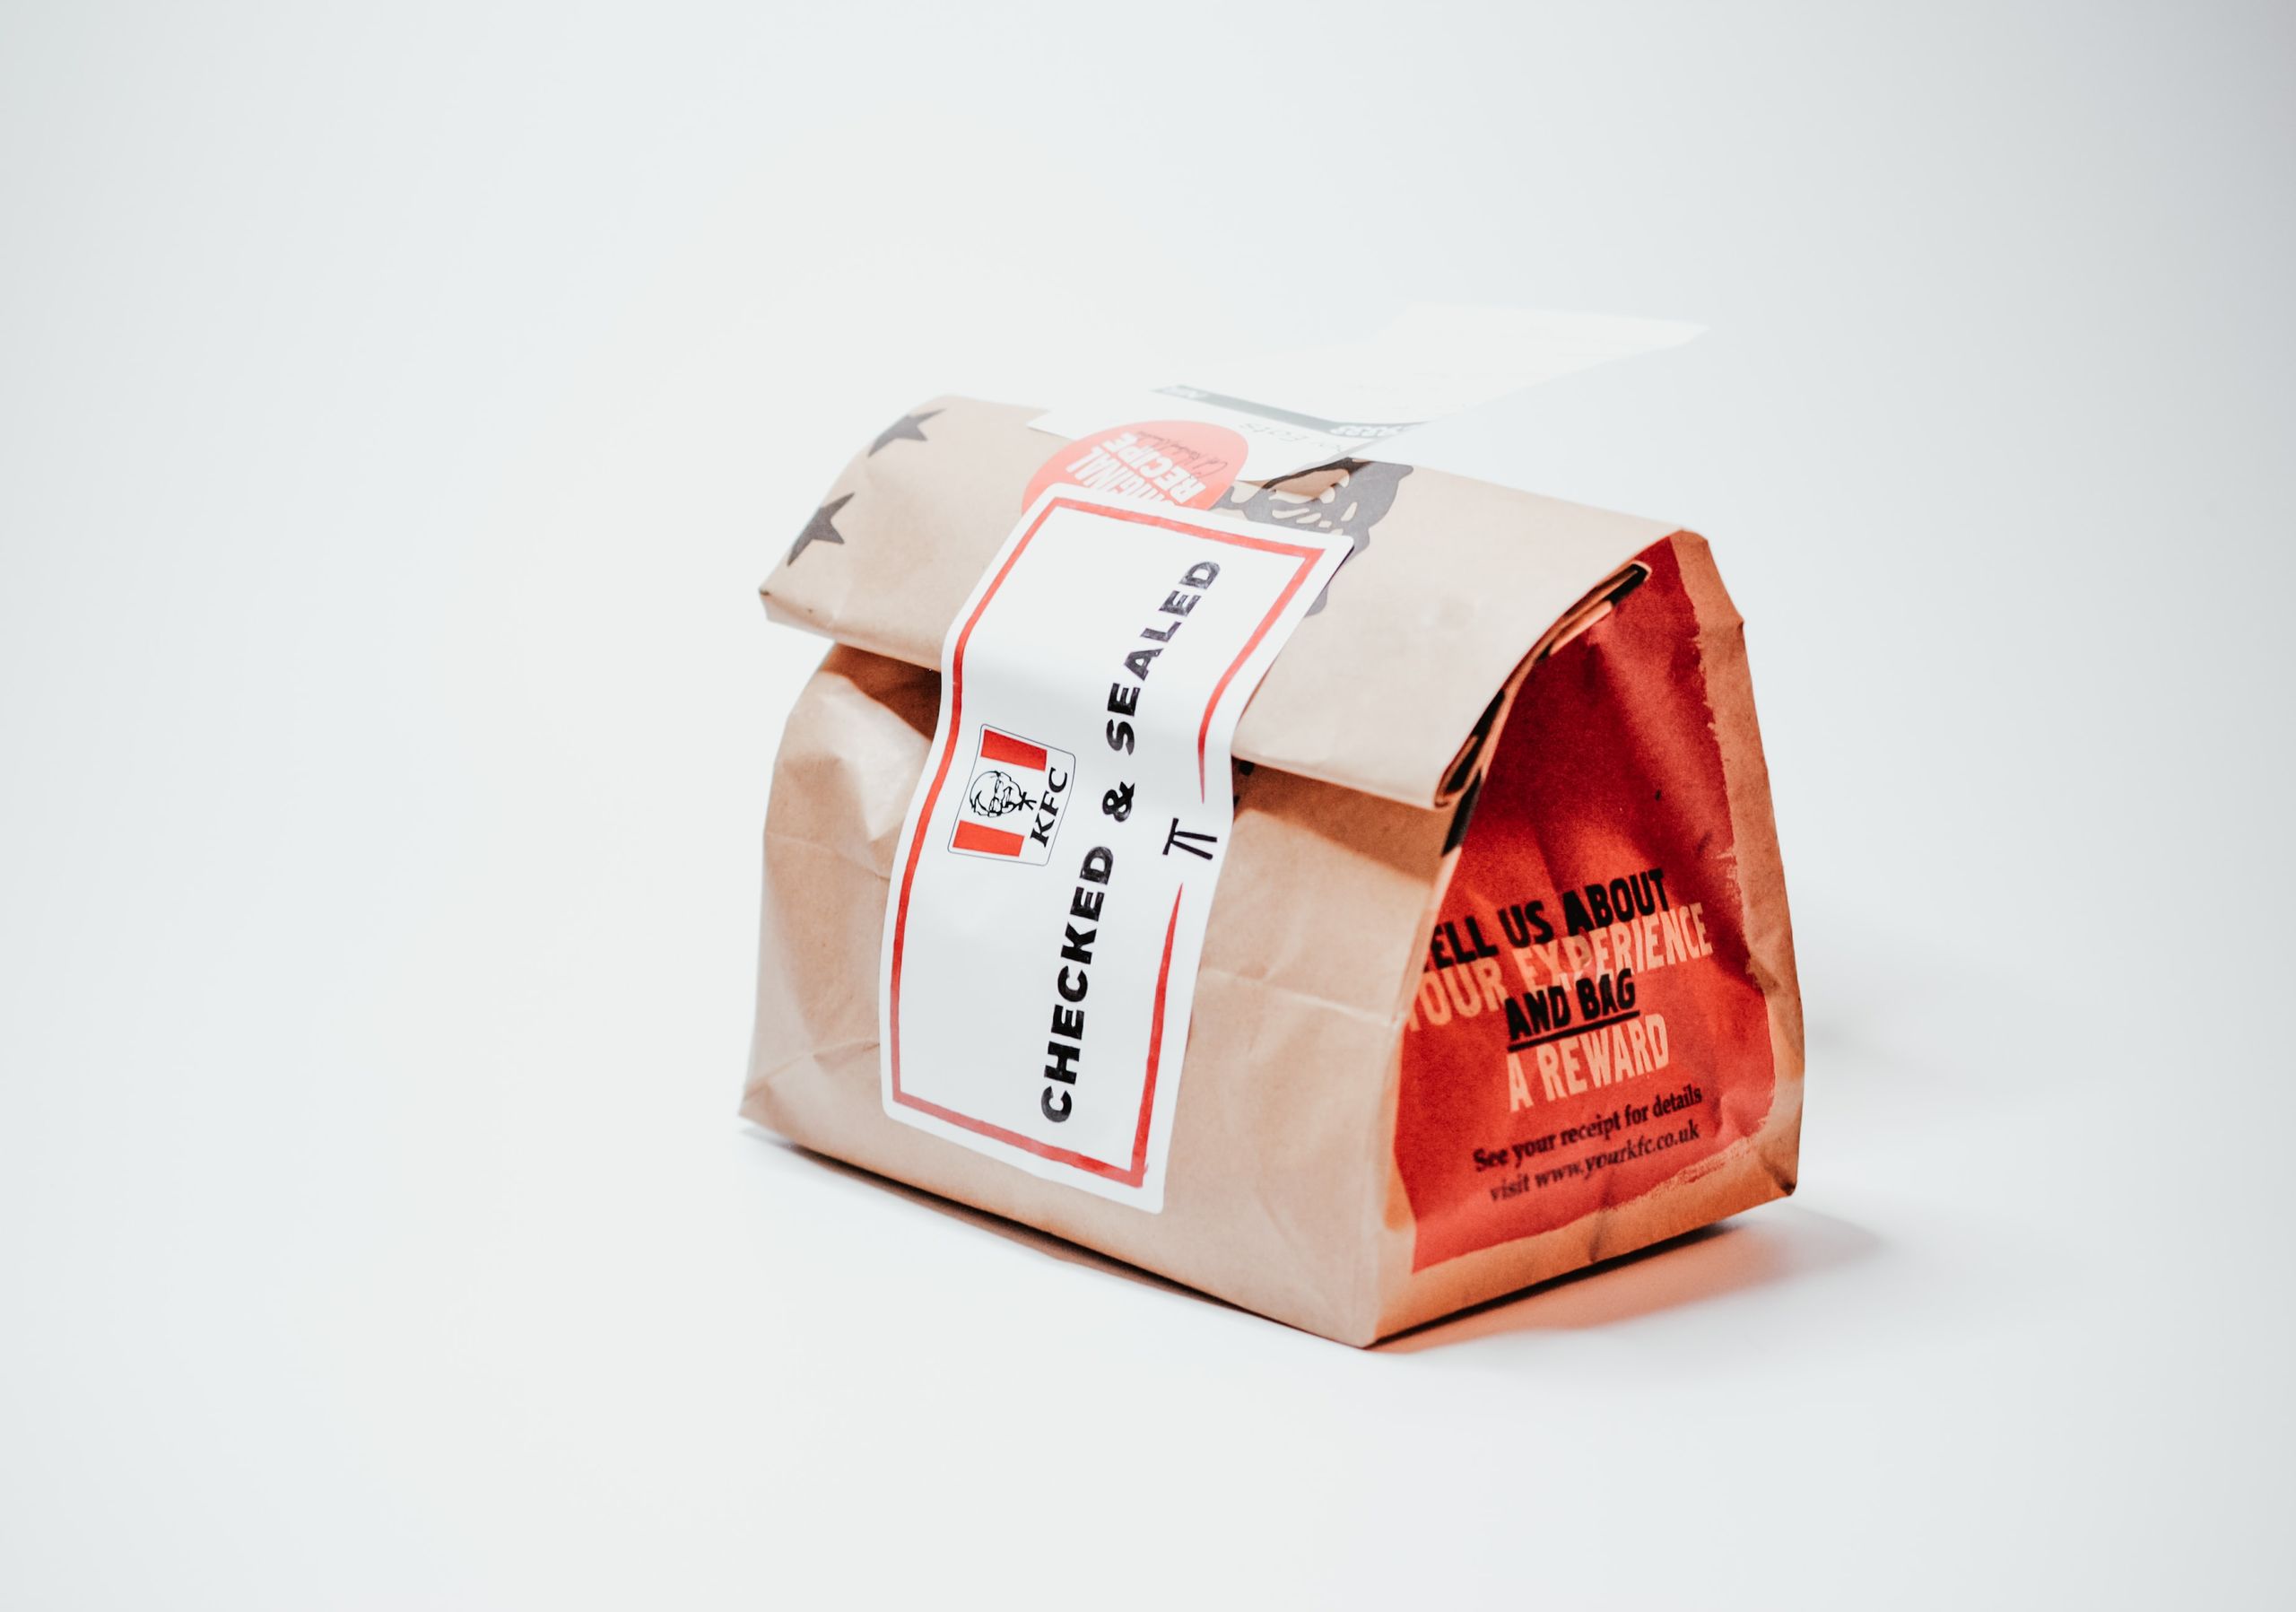 I love delivery: come realizzare un packaging per asporto che funzioni!: Vorresti che i tuoi clienti ti ricordassero più facilmente? Scopri come realizzare un packaging per l'asporto che funzioni davvero!